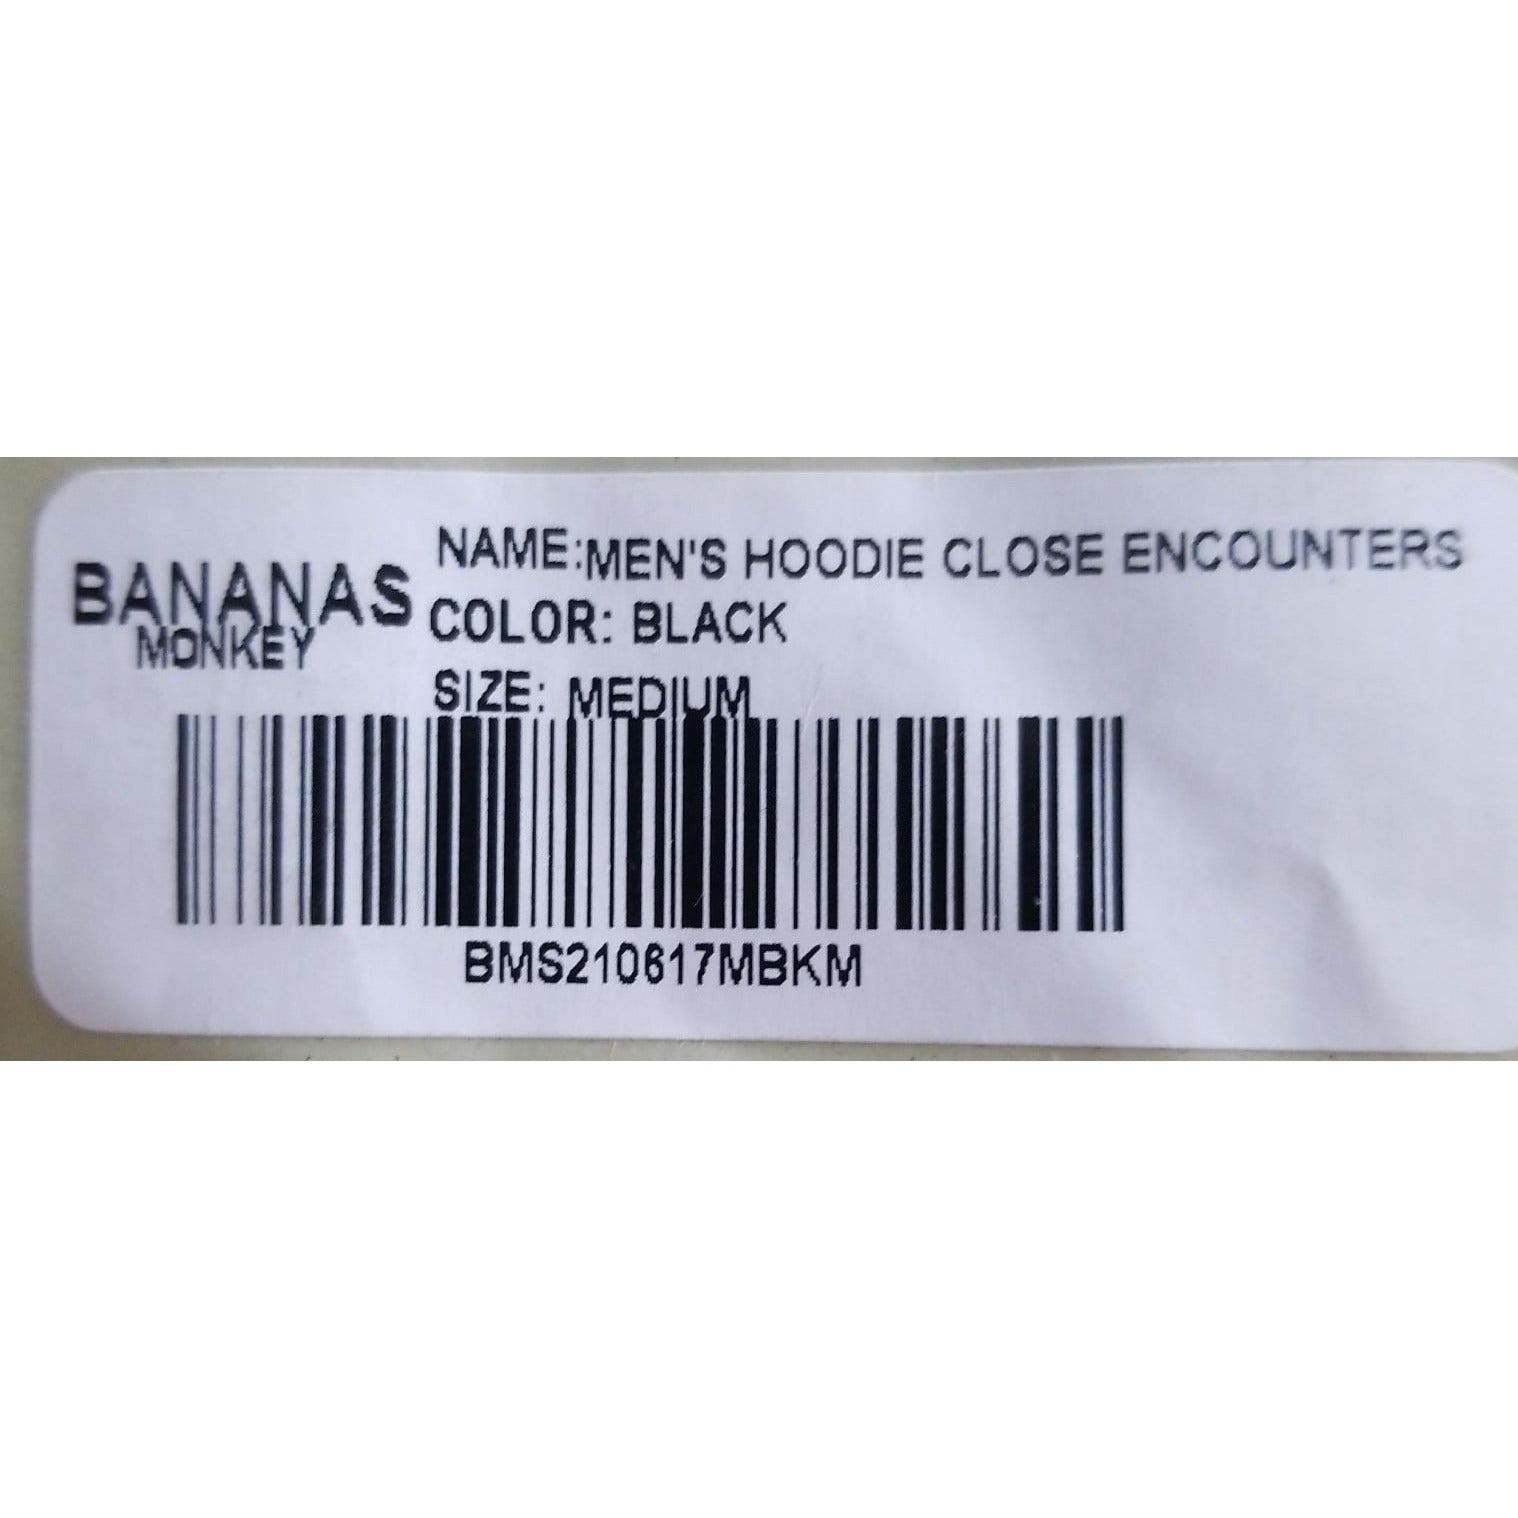 Bananas Monkey Close Encounters Hoodie serial